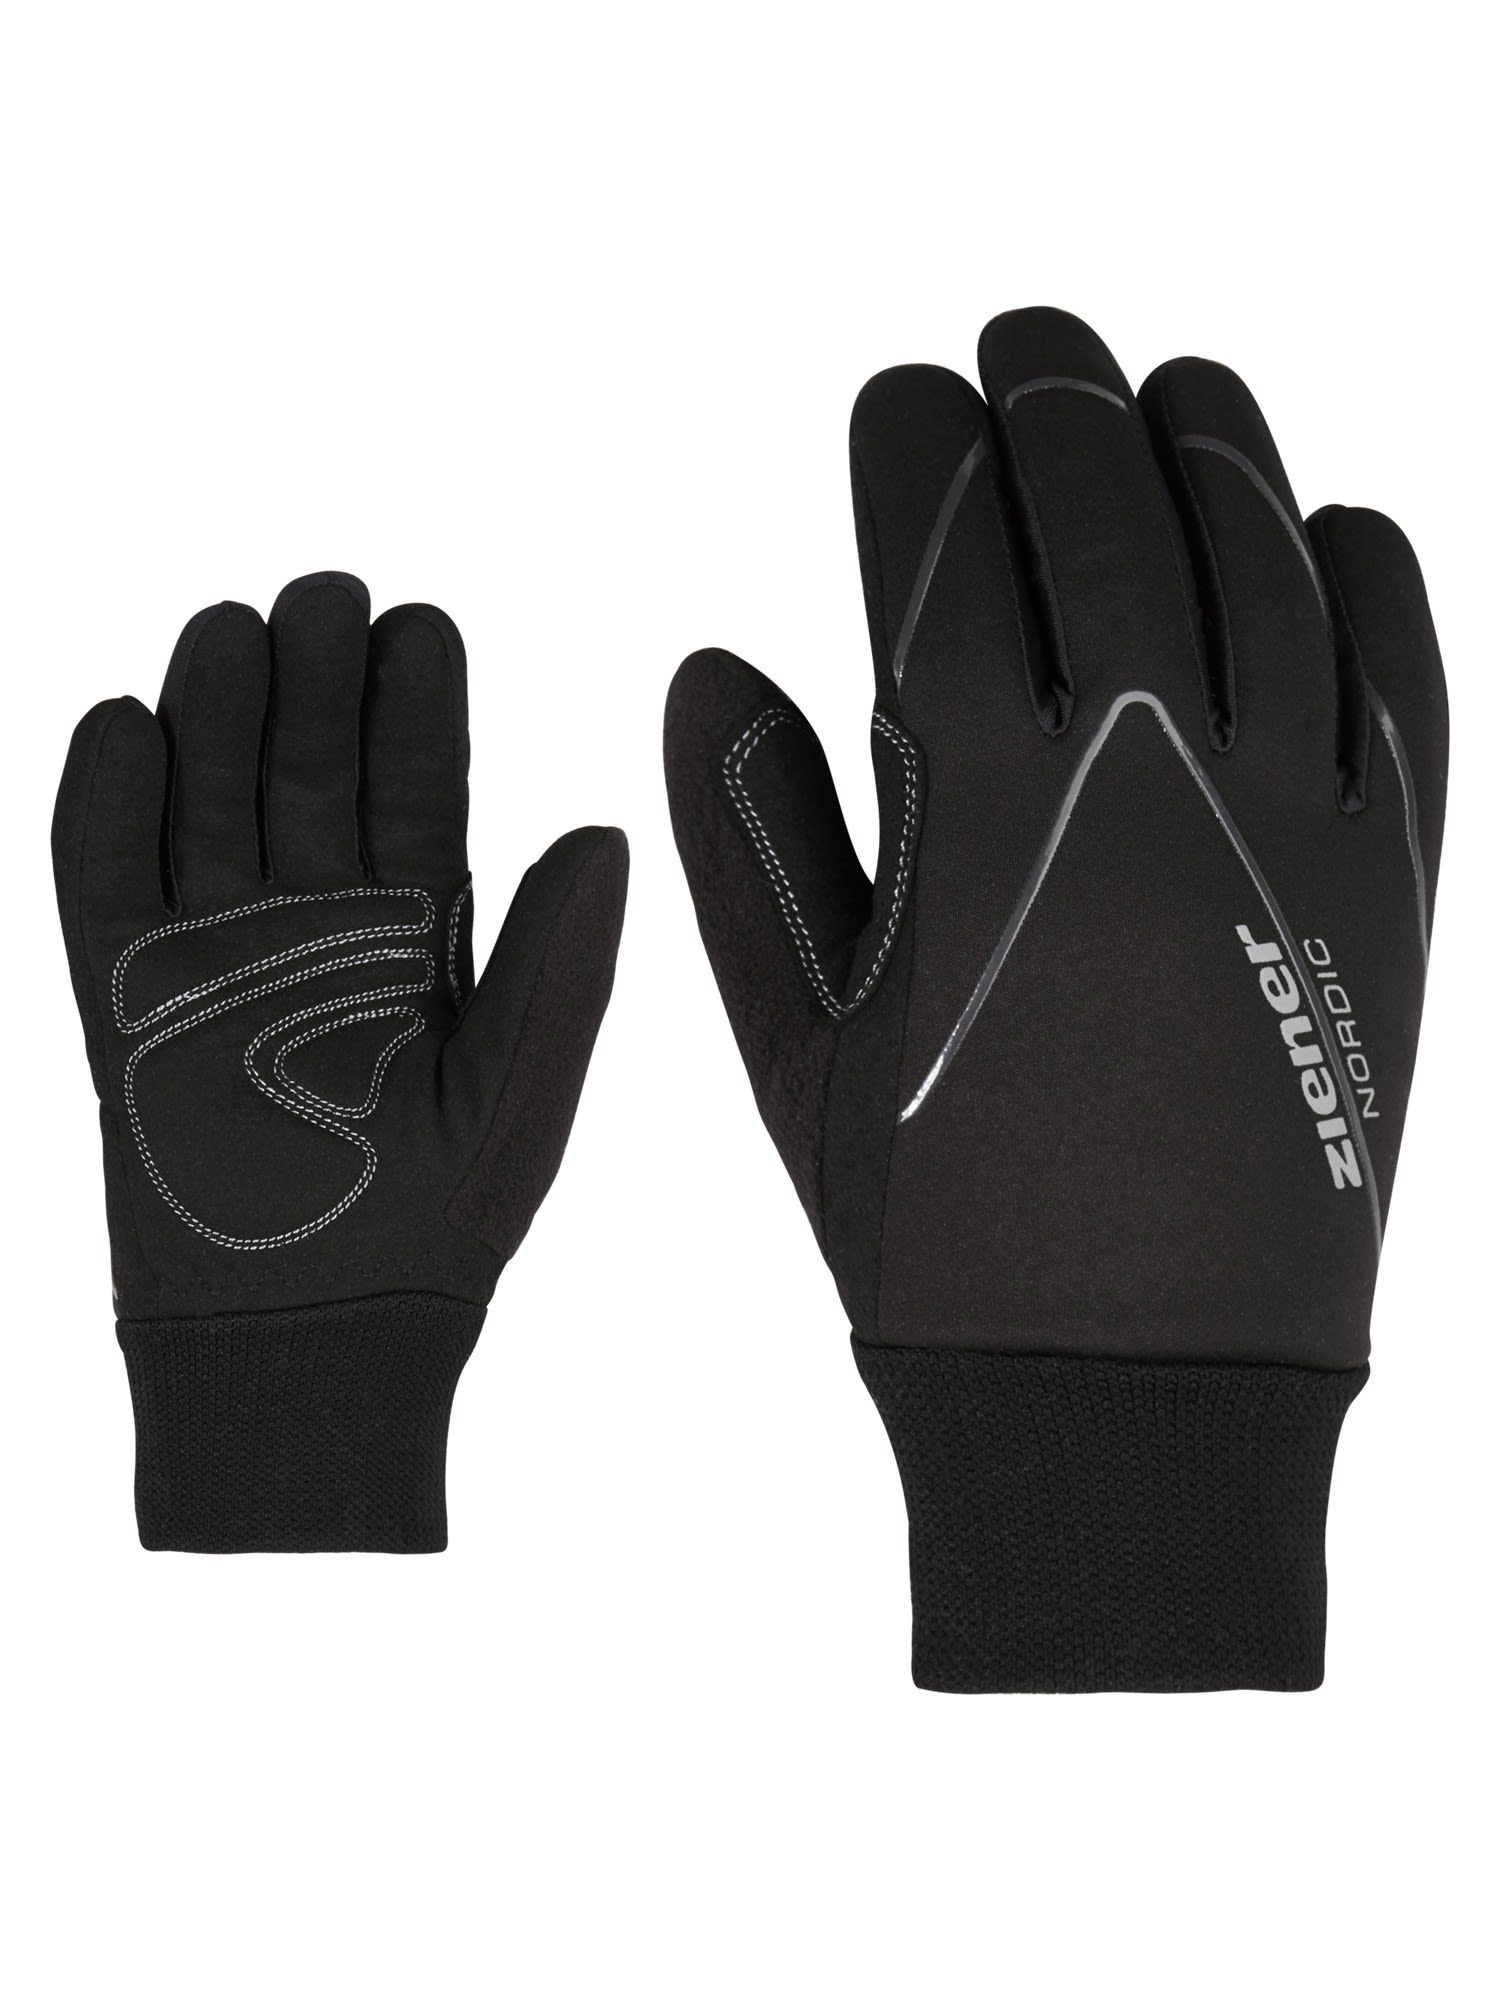 Unico Accessoires Junior Ziener Fleecehandschuhe Black Glove Ziener Kinder